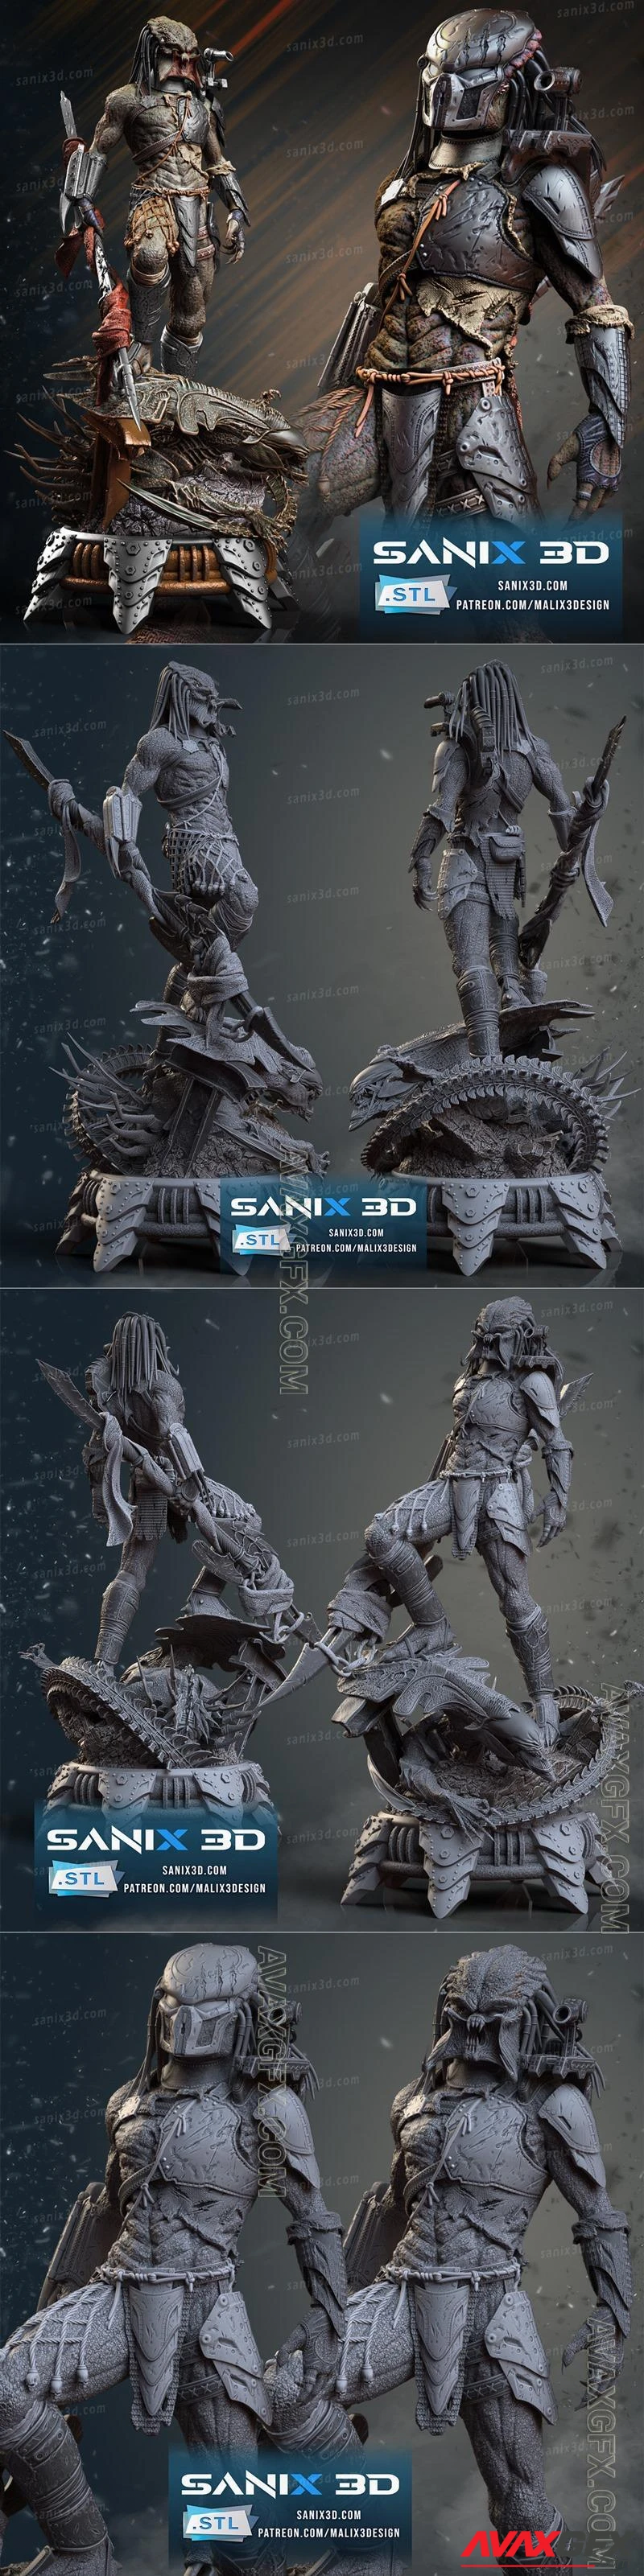 Sanix - Alien vs Predator - STL 3D Model